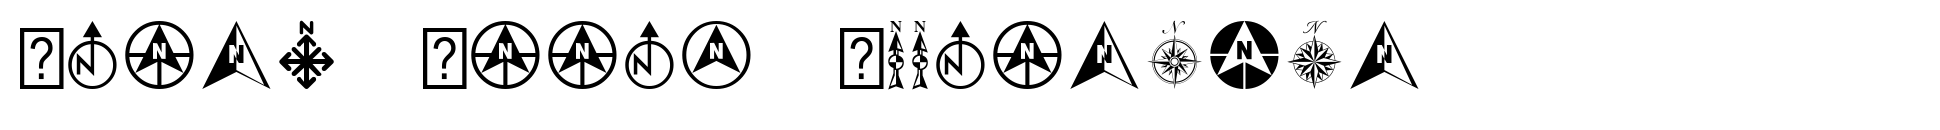 North Arrow Assortment